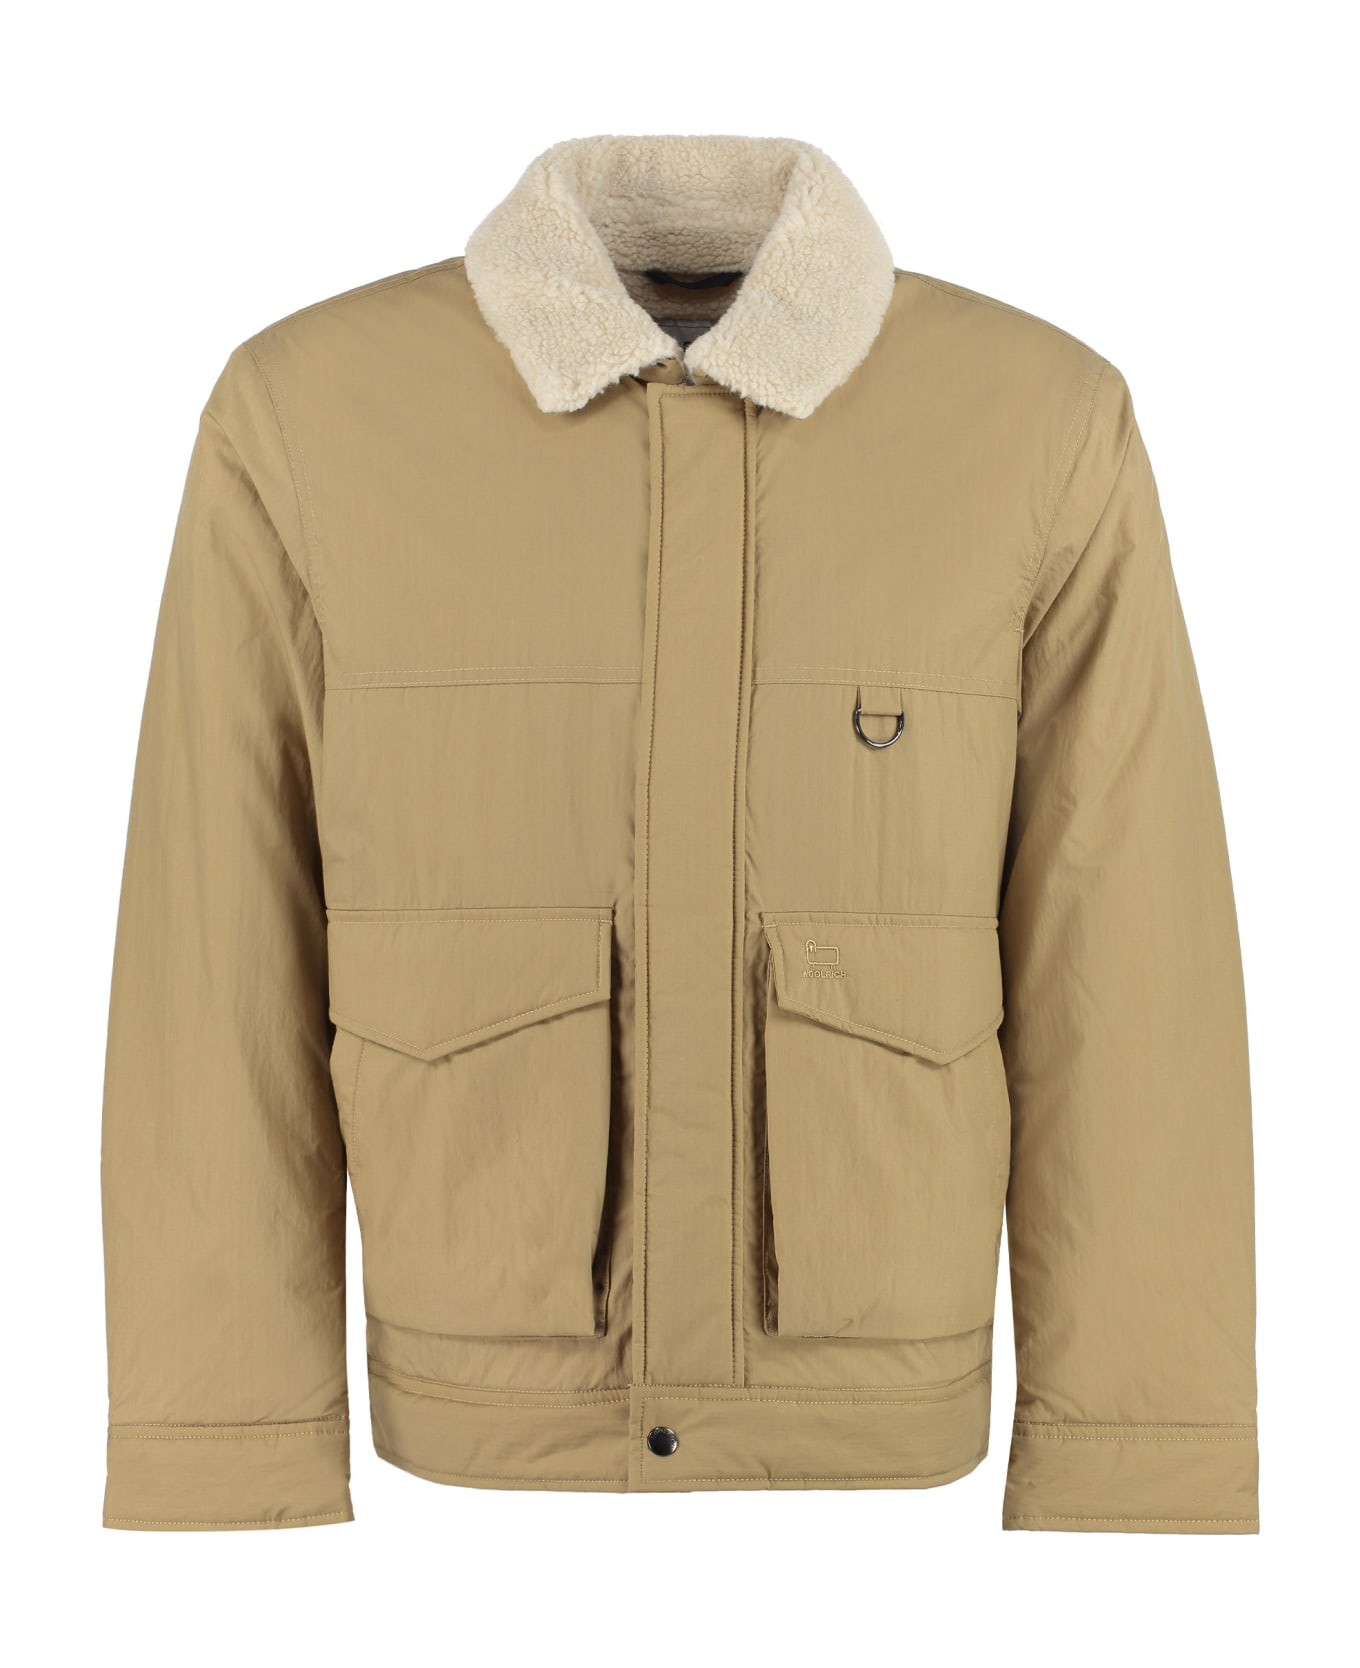 Woolrich Cotton Blend Jacket - Beige レインコート